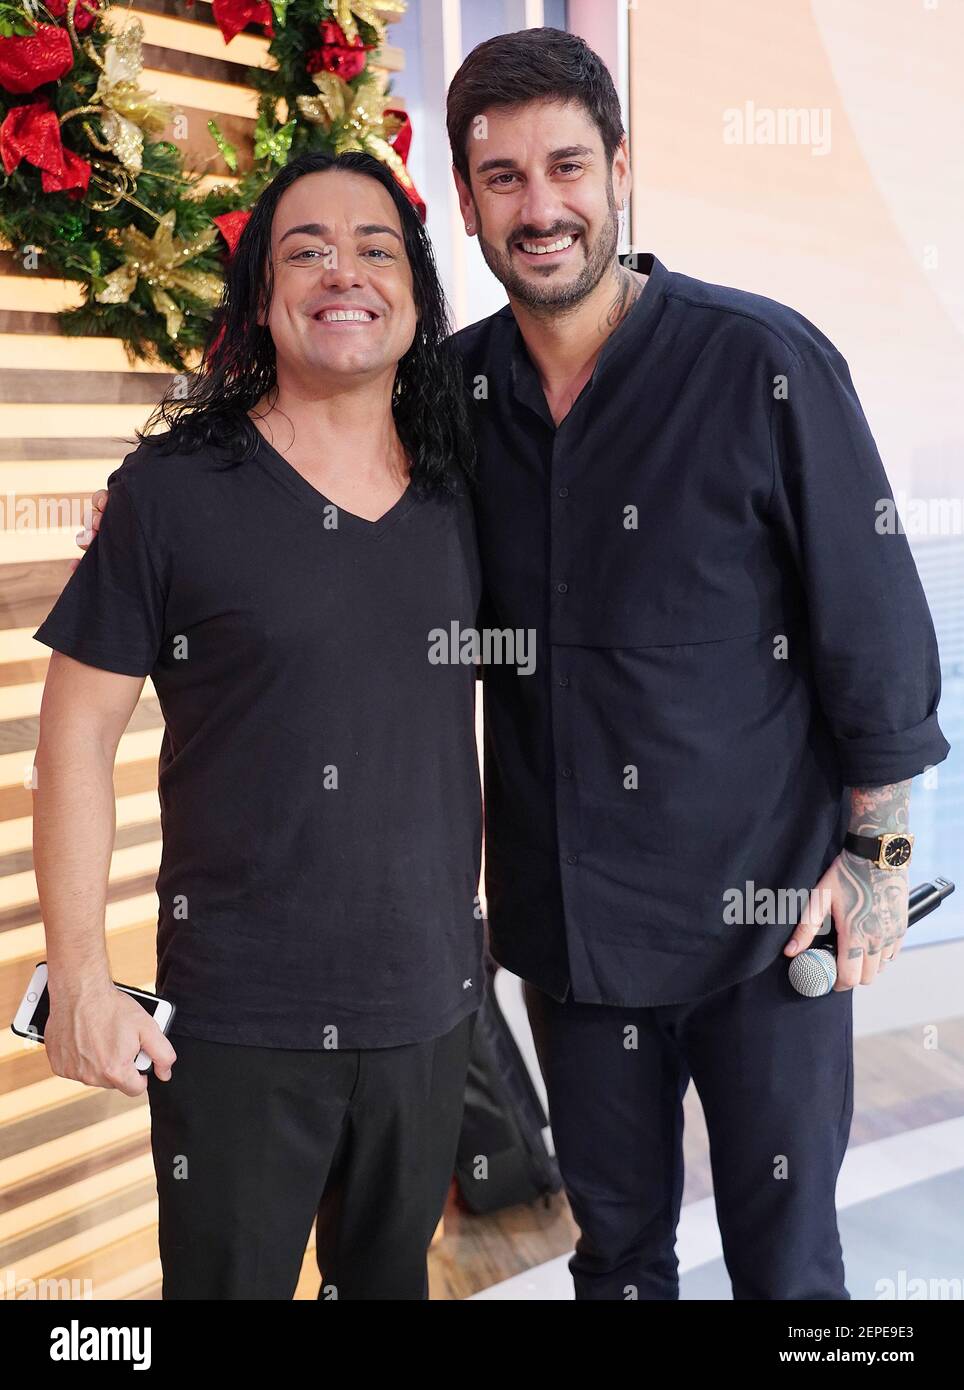 MIAMI, FL - DEC 10: spanish pop singers-songwriters Jordi Llunas and  Melendi are seen during UnivisionÕs